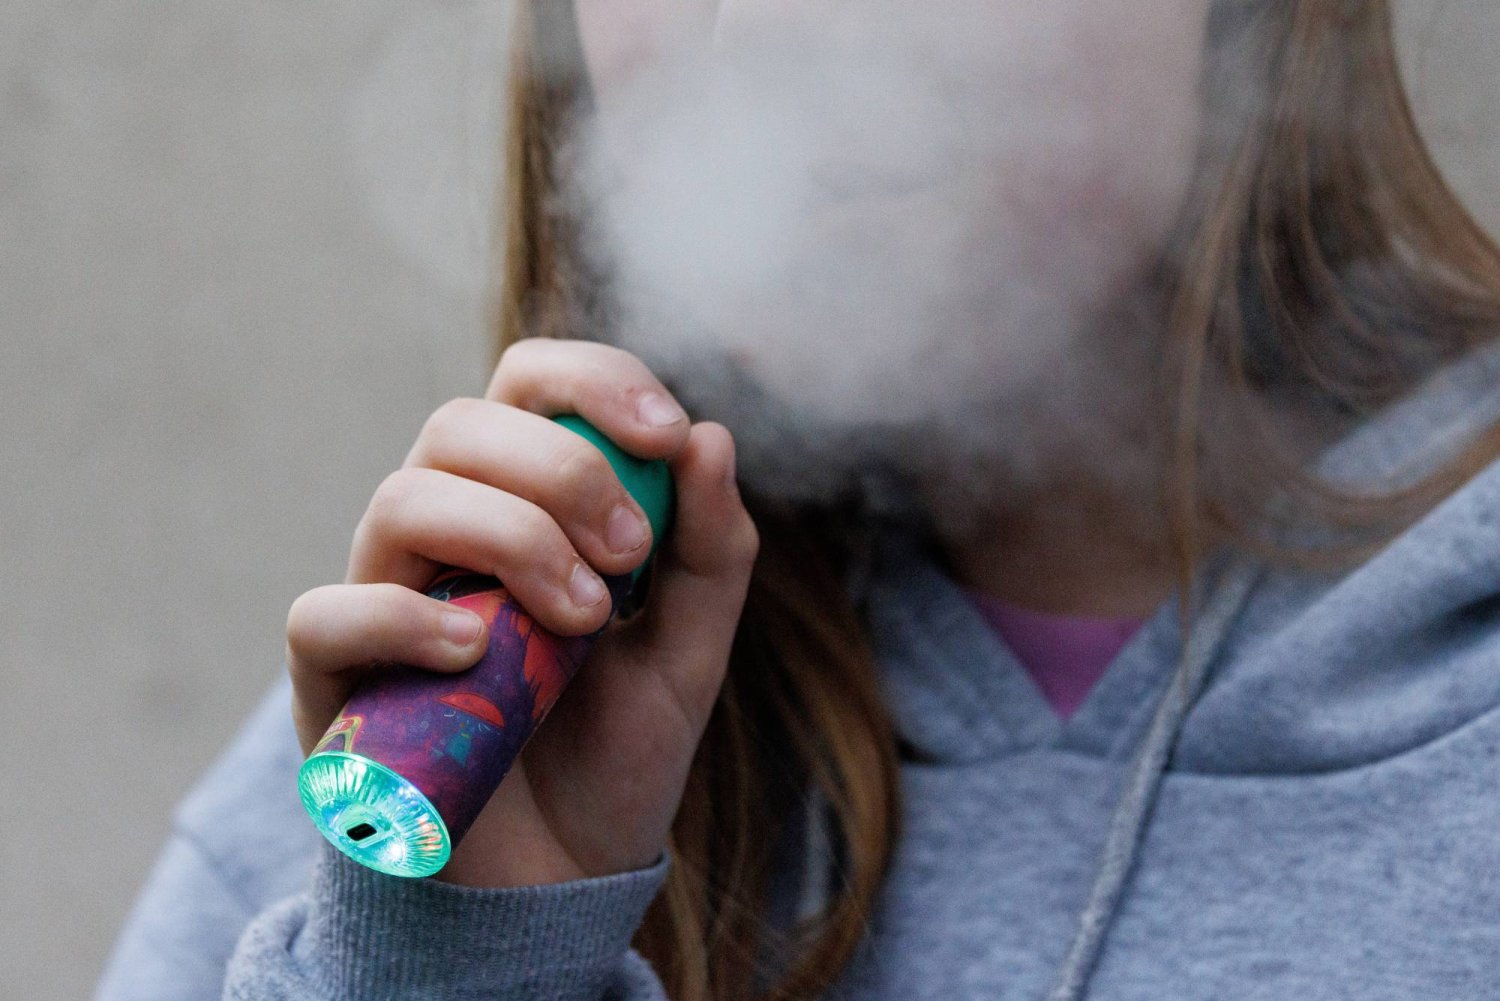 فتاة تستخدم أحد منتجات التدخين الإلكتروني في لندن (إ.ب.أ)